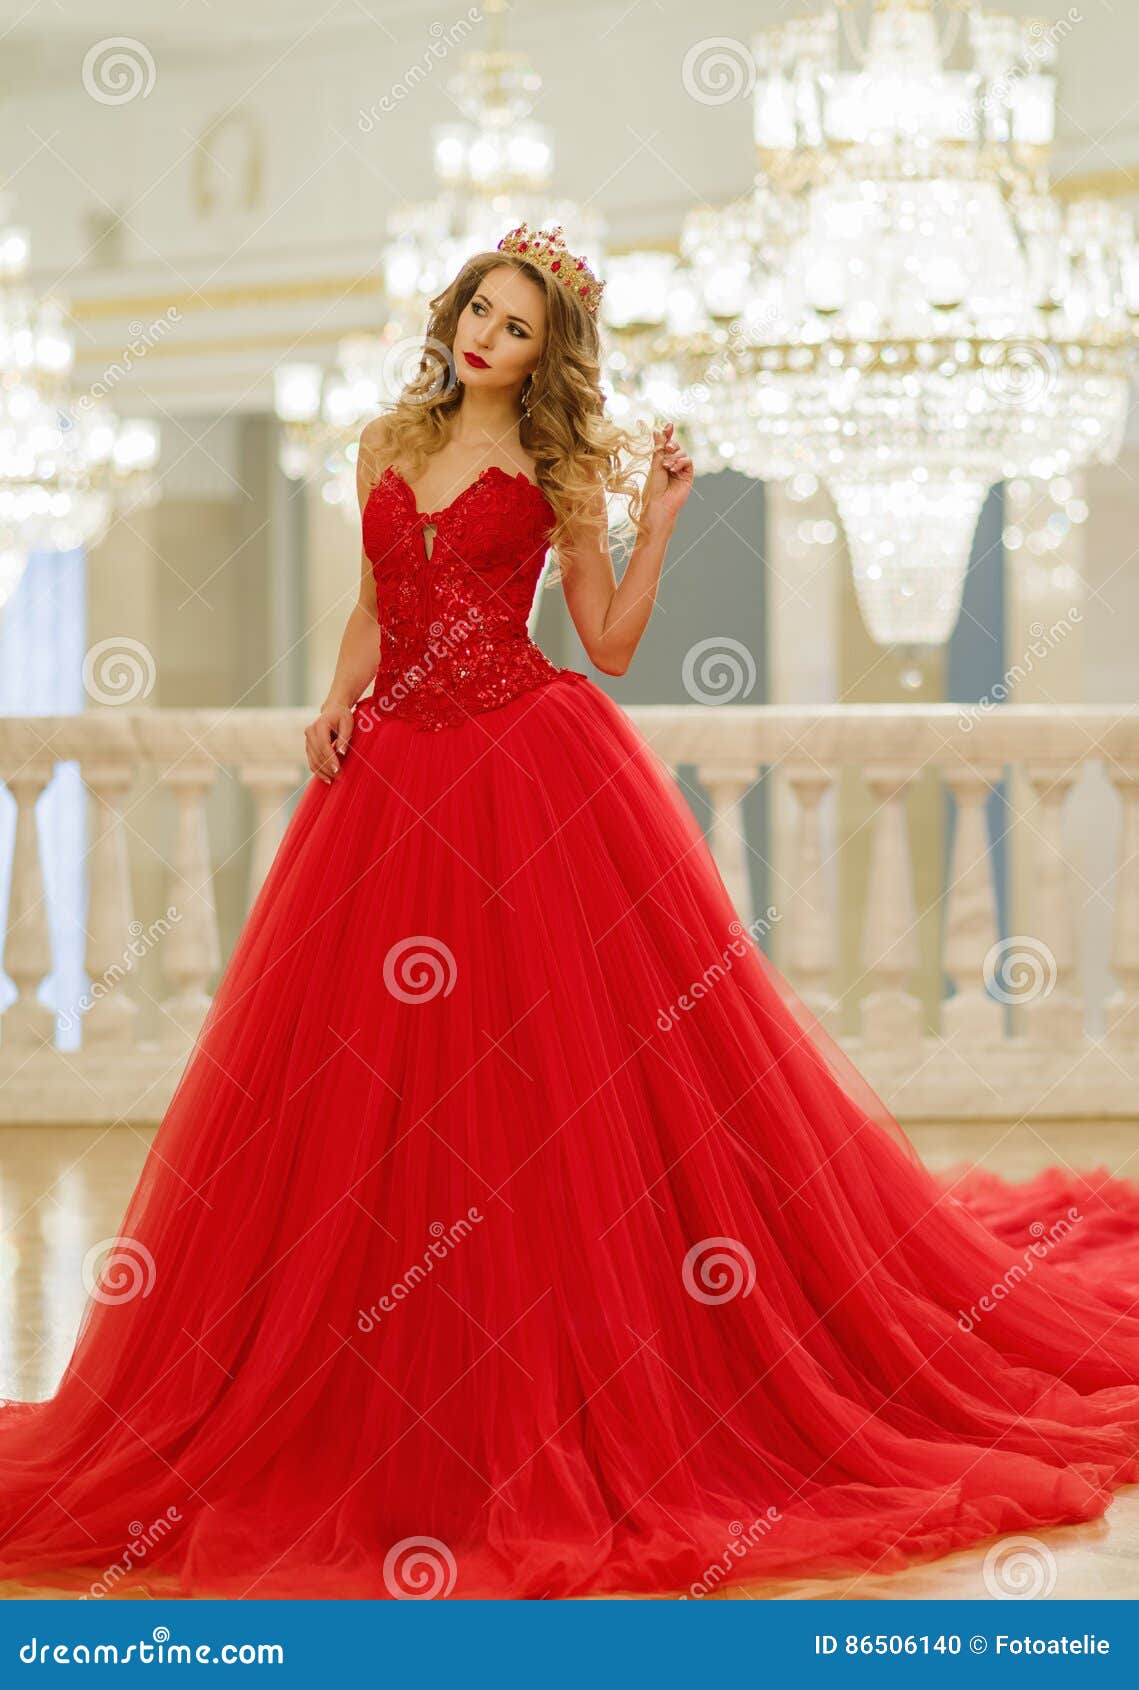 Mujer Hermosa En Un Vestido Largo Rojo Y Una Corona Oro GR de archivo - Imagen de reina, atractivo: 86506140